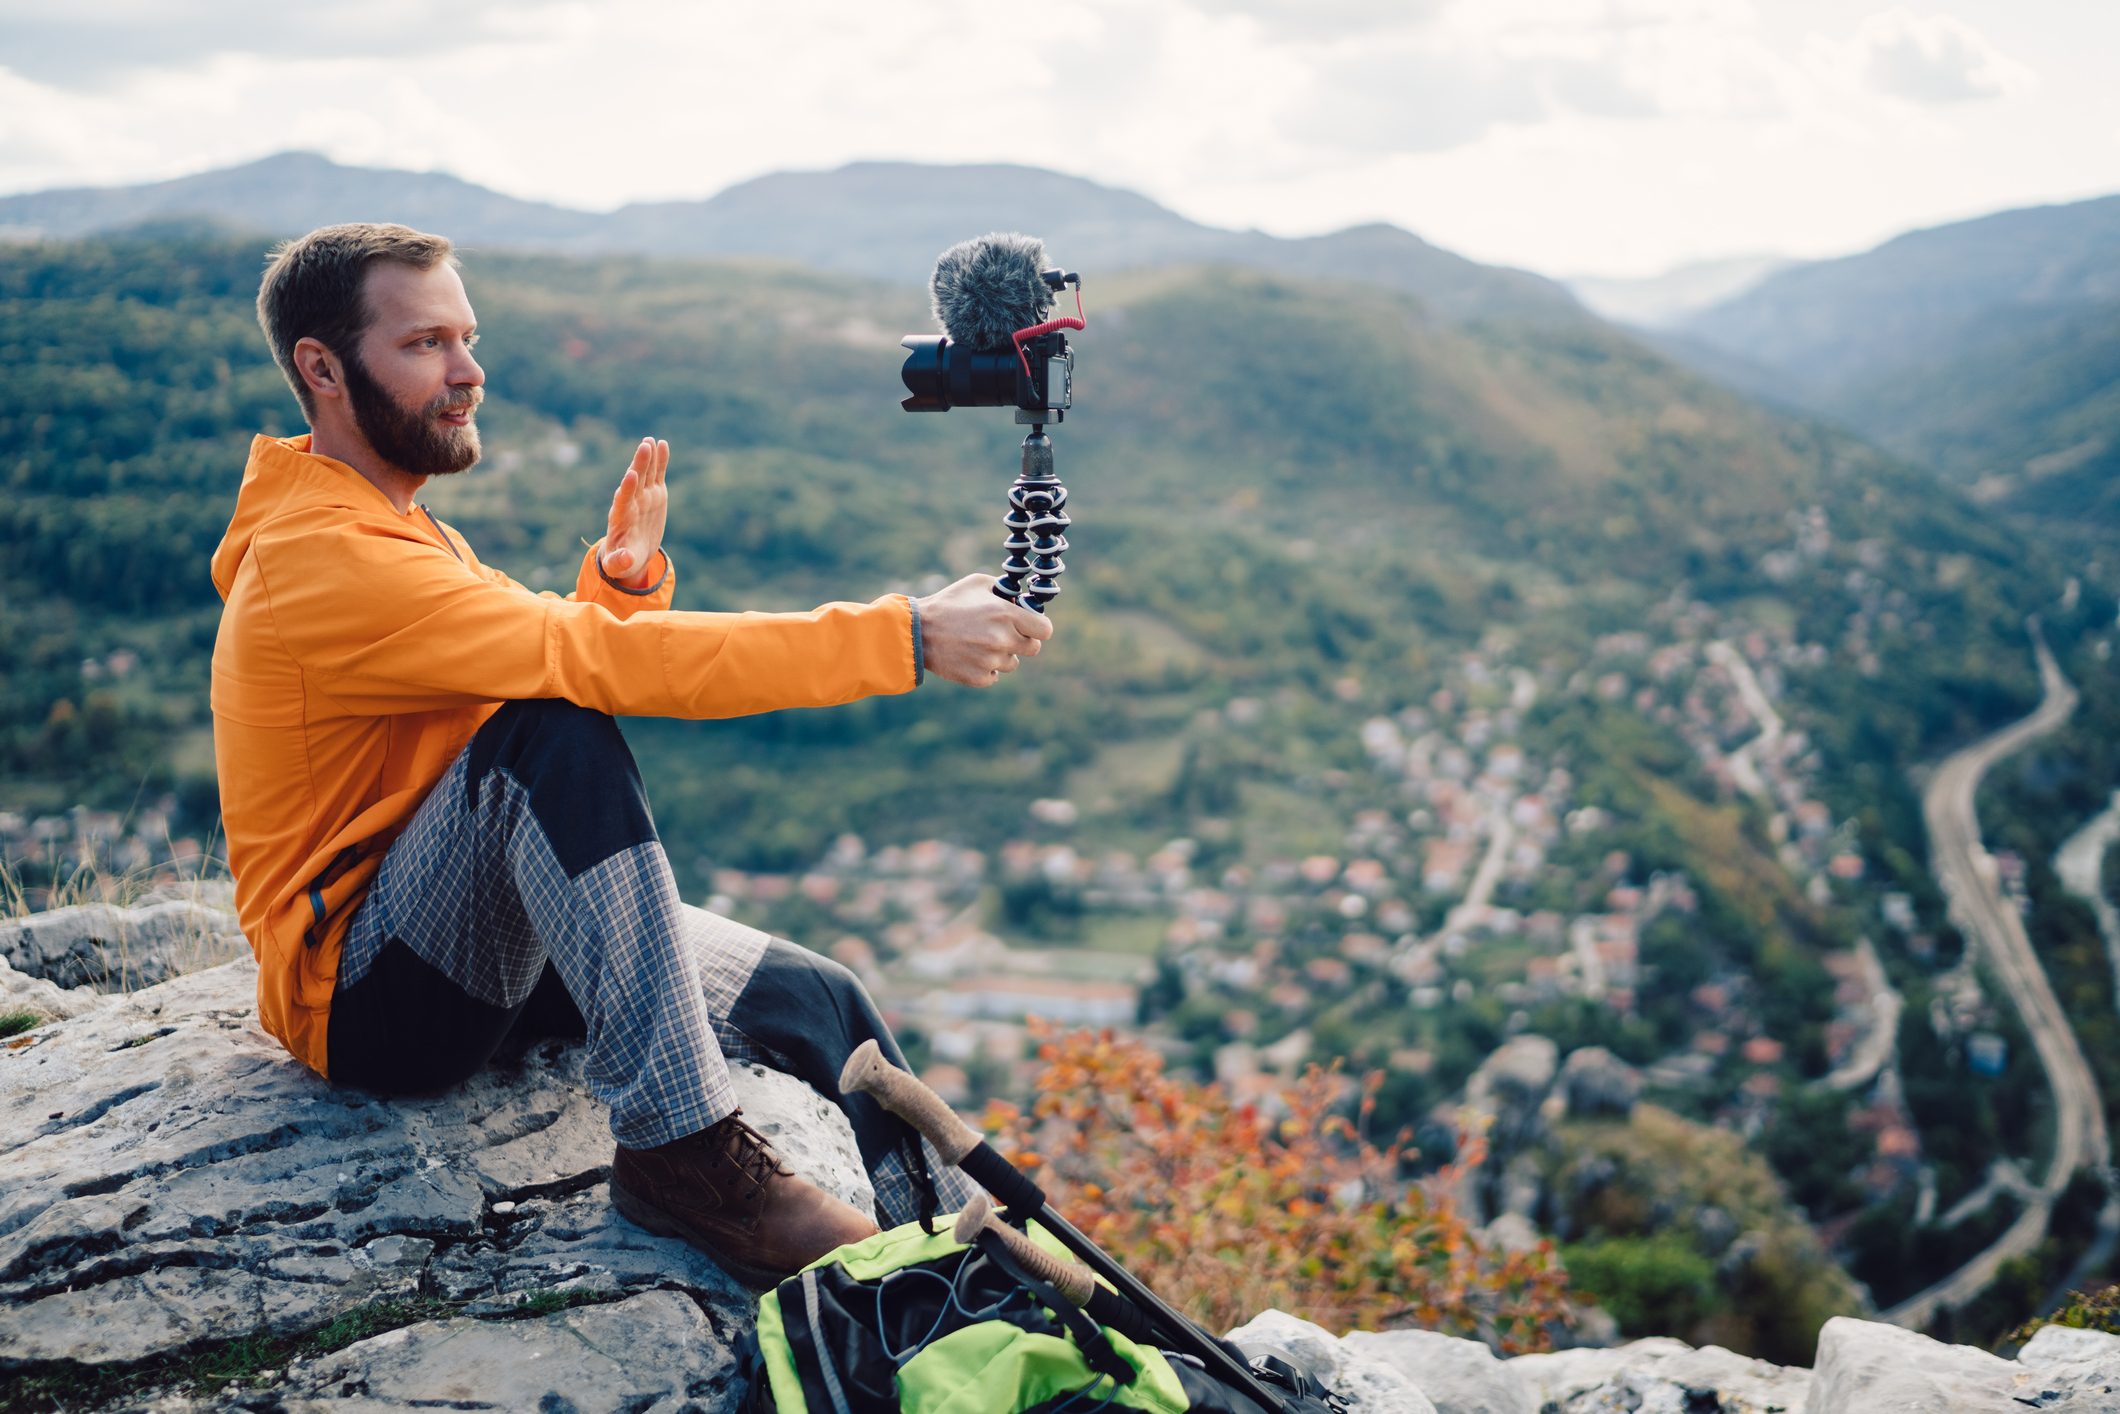 2019 Top Cameras for Vlogging